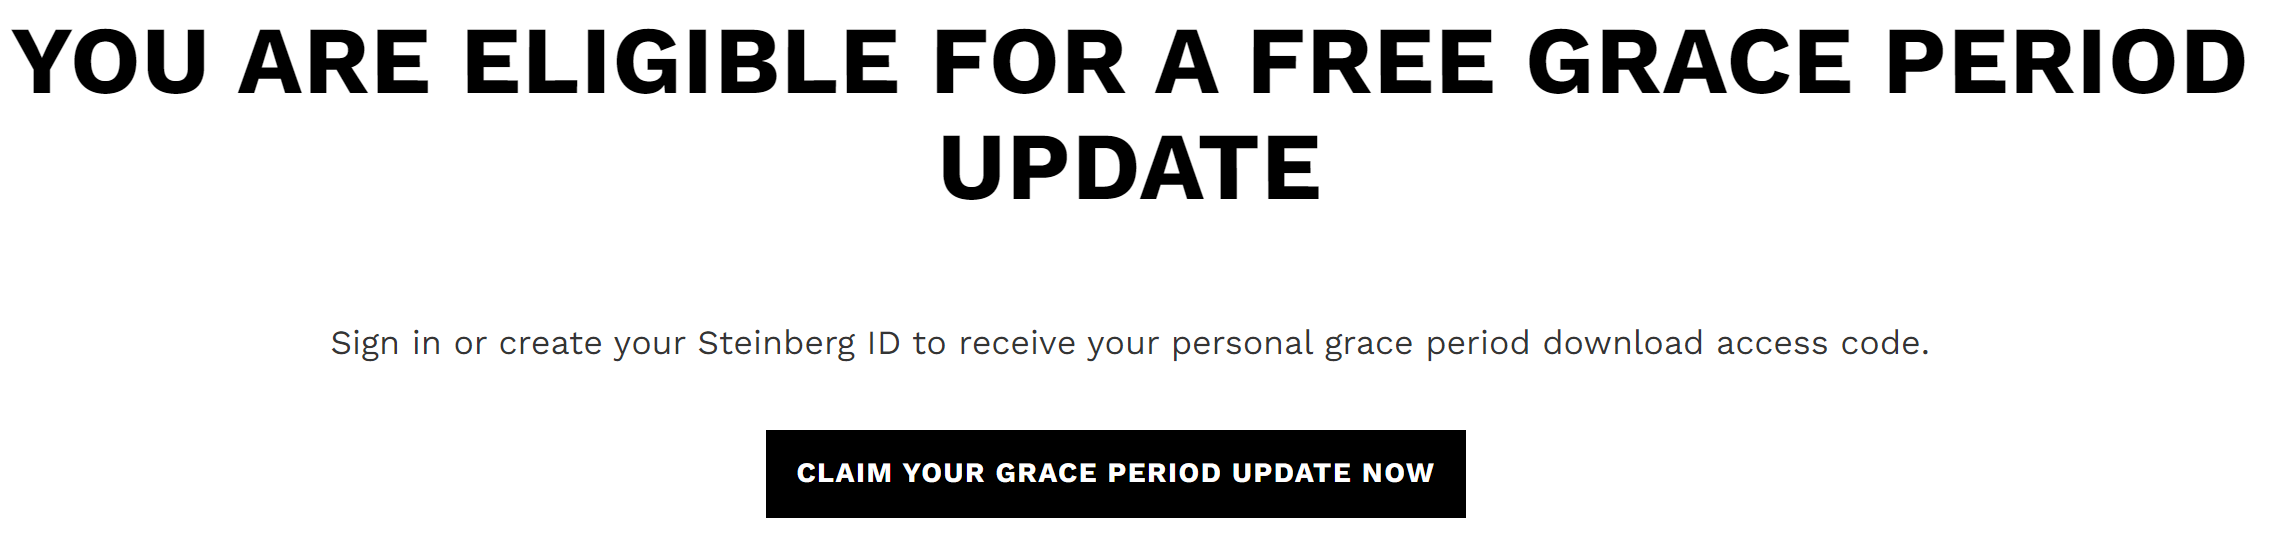 Grace_Period_Confirmation_EN.png